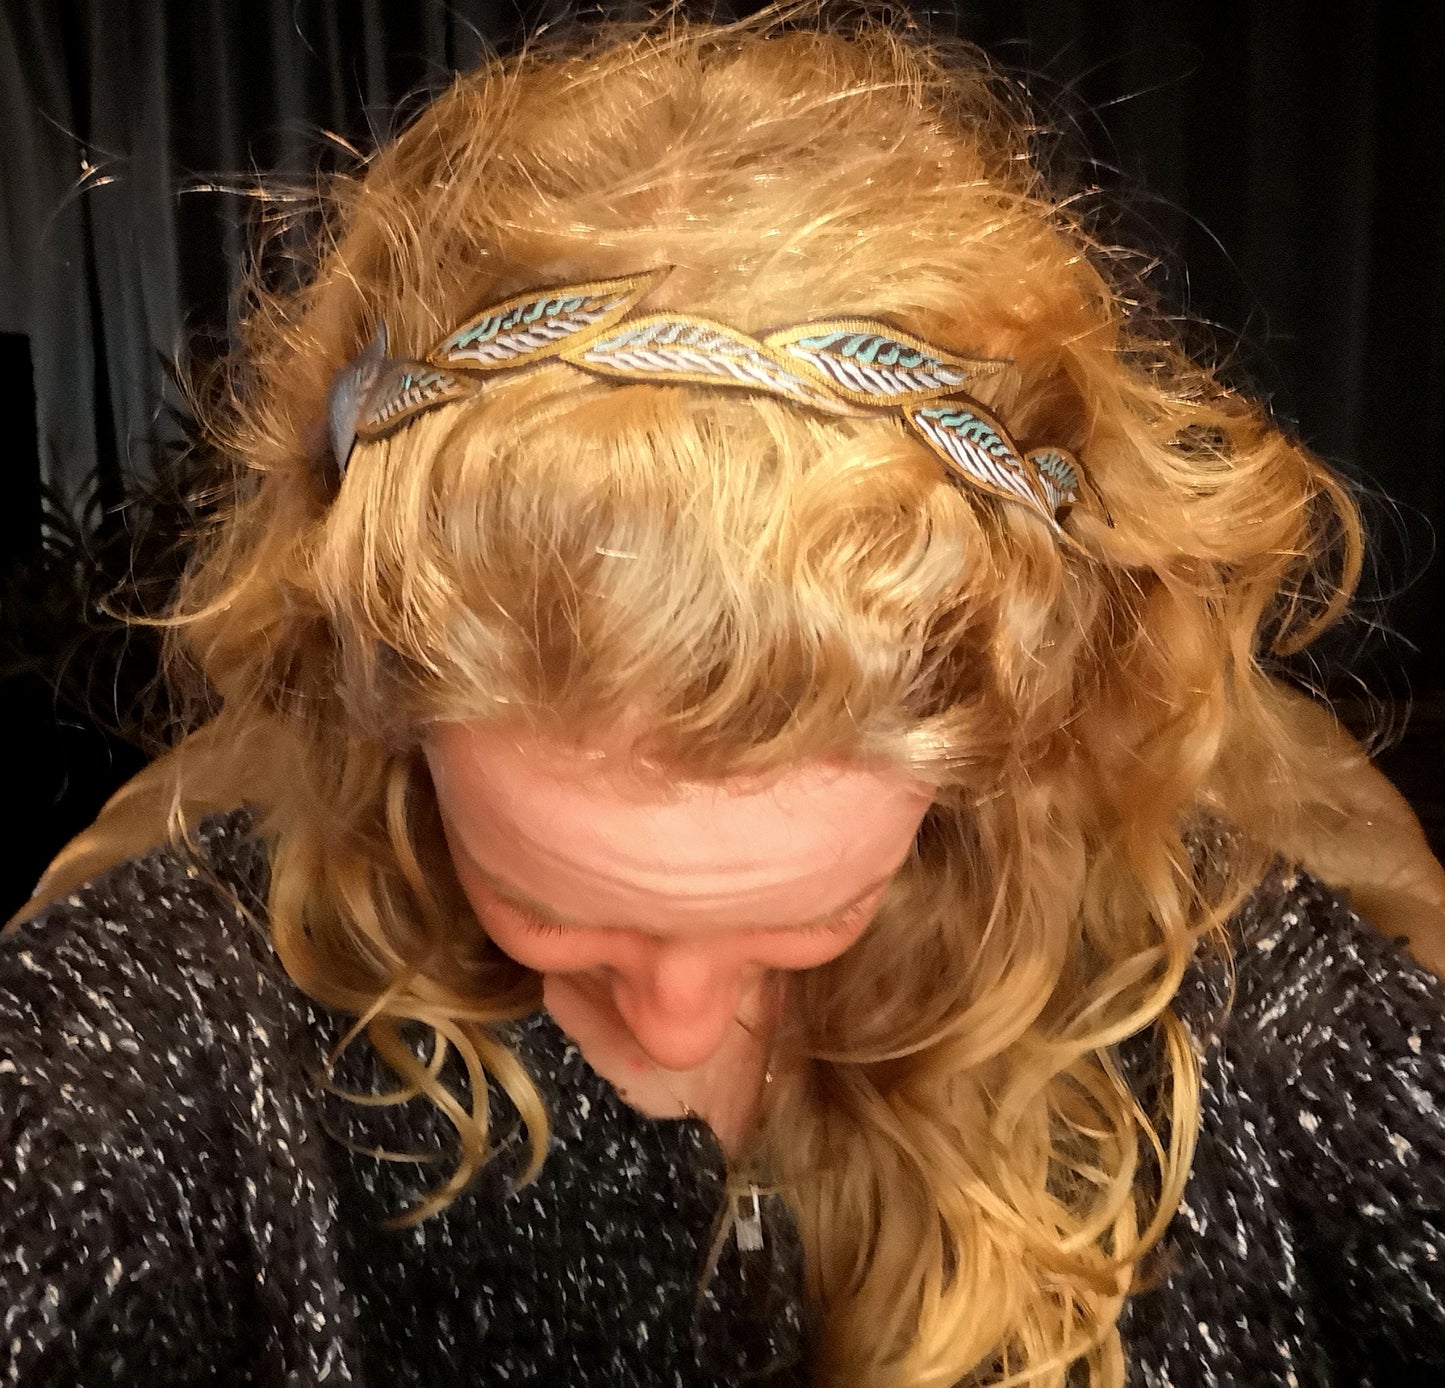 Haarband / Stirnband - div. Farben